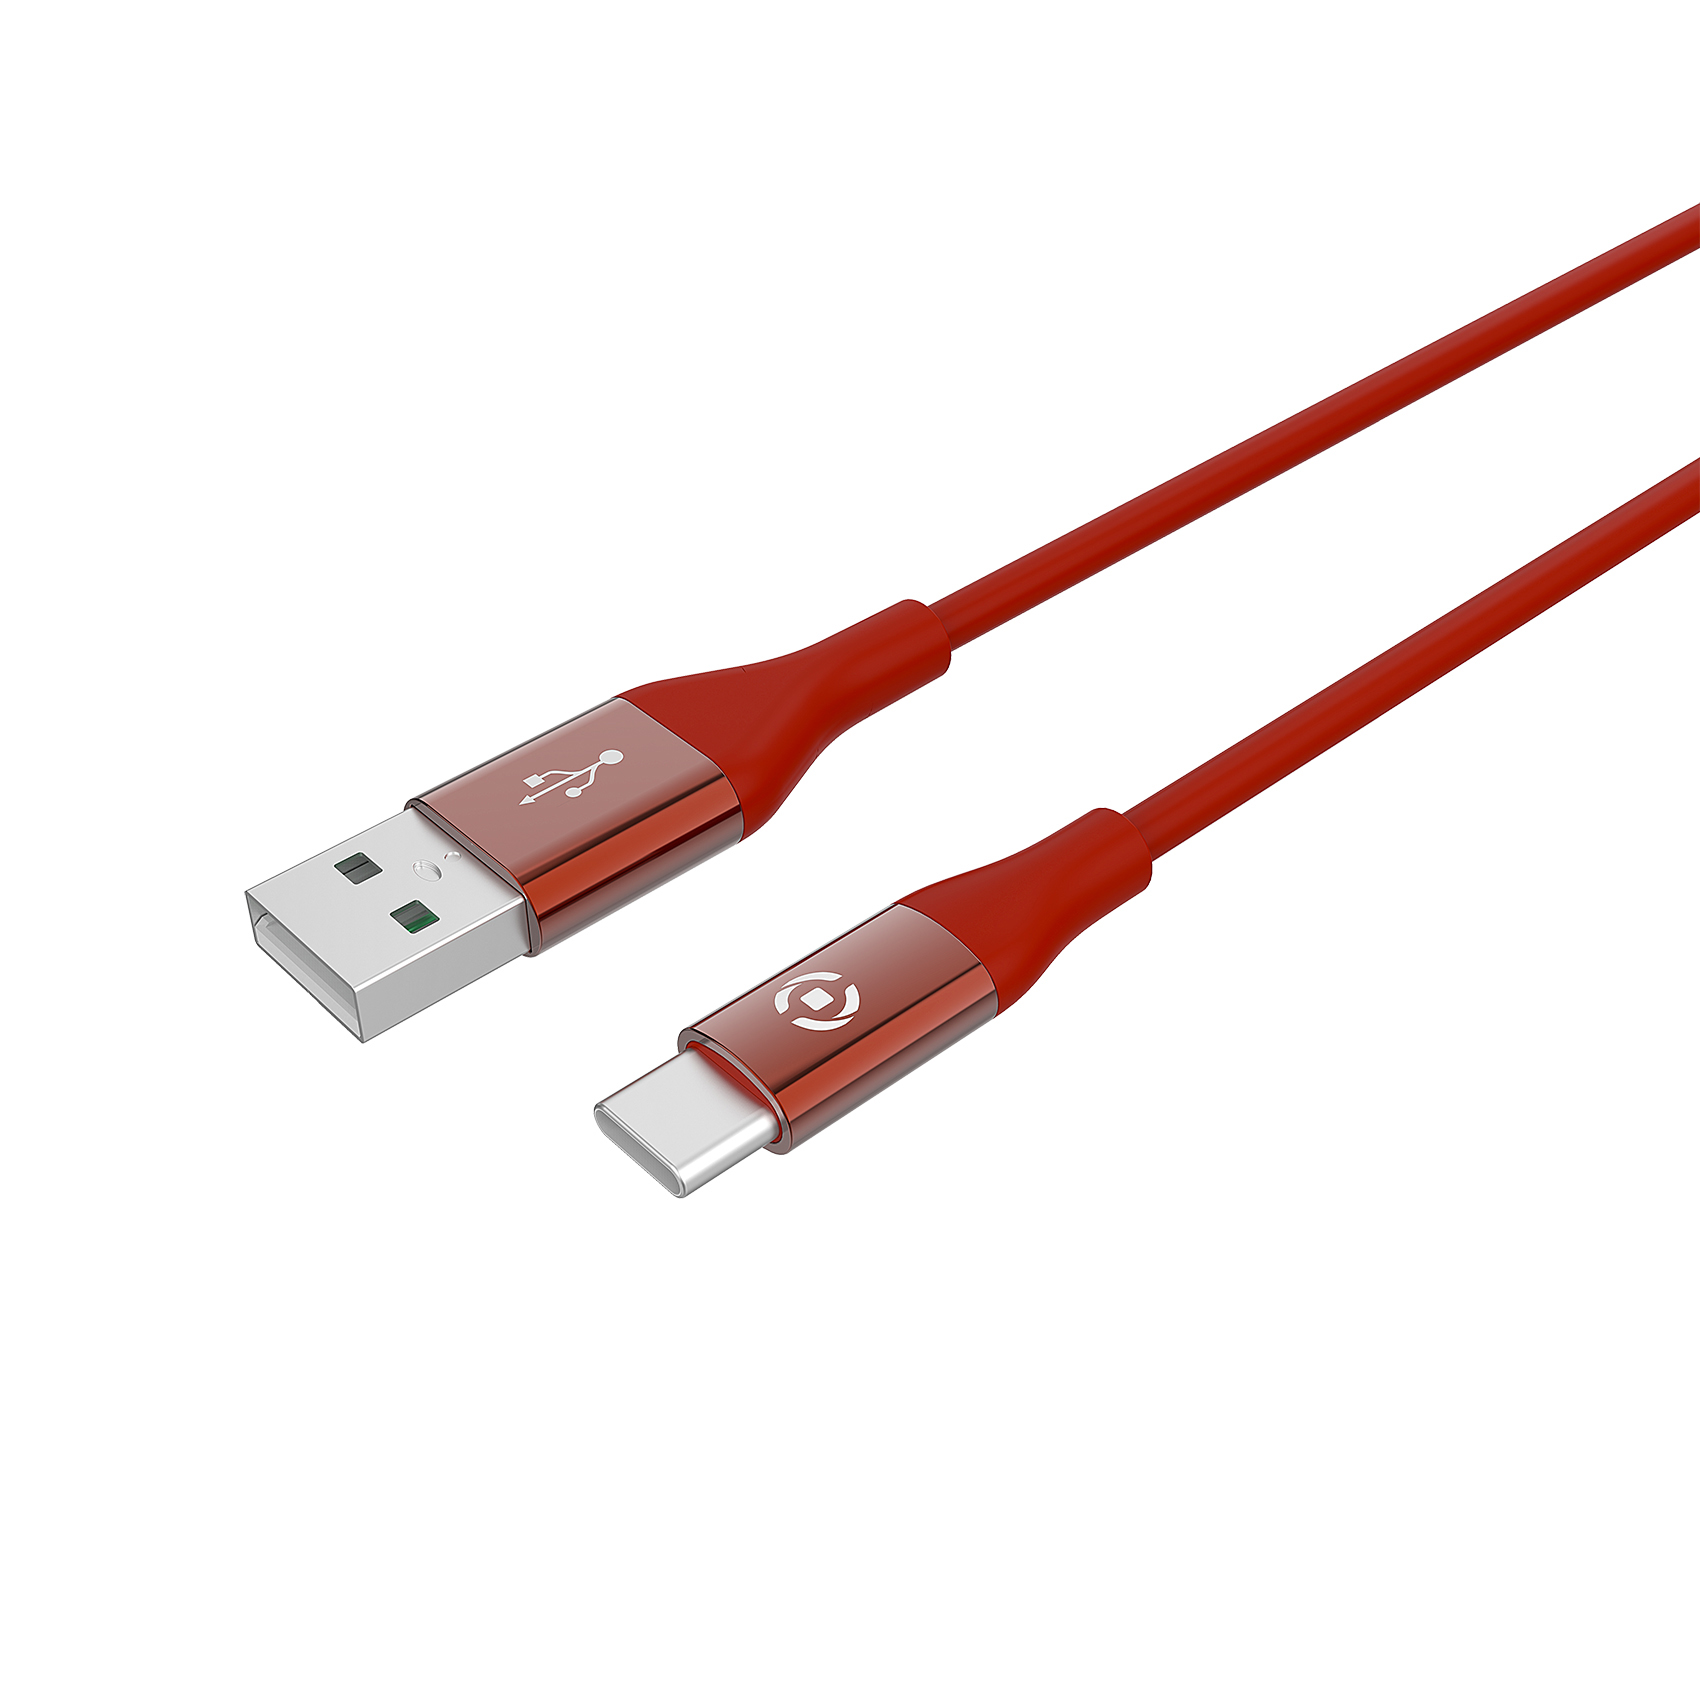 CELLY USB-C kabl za telefon u CRVENOJ boji slika 1